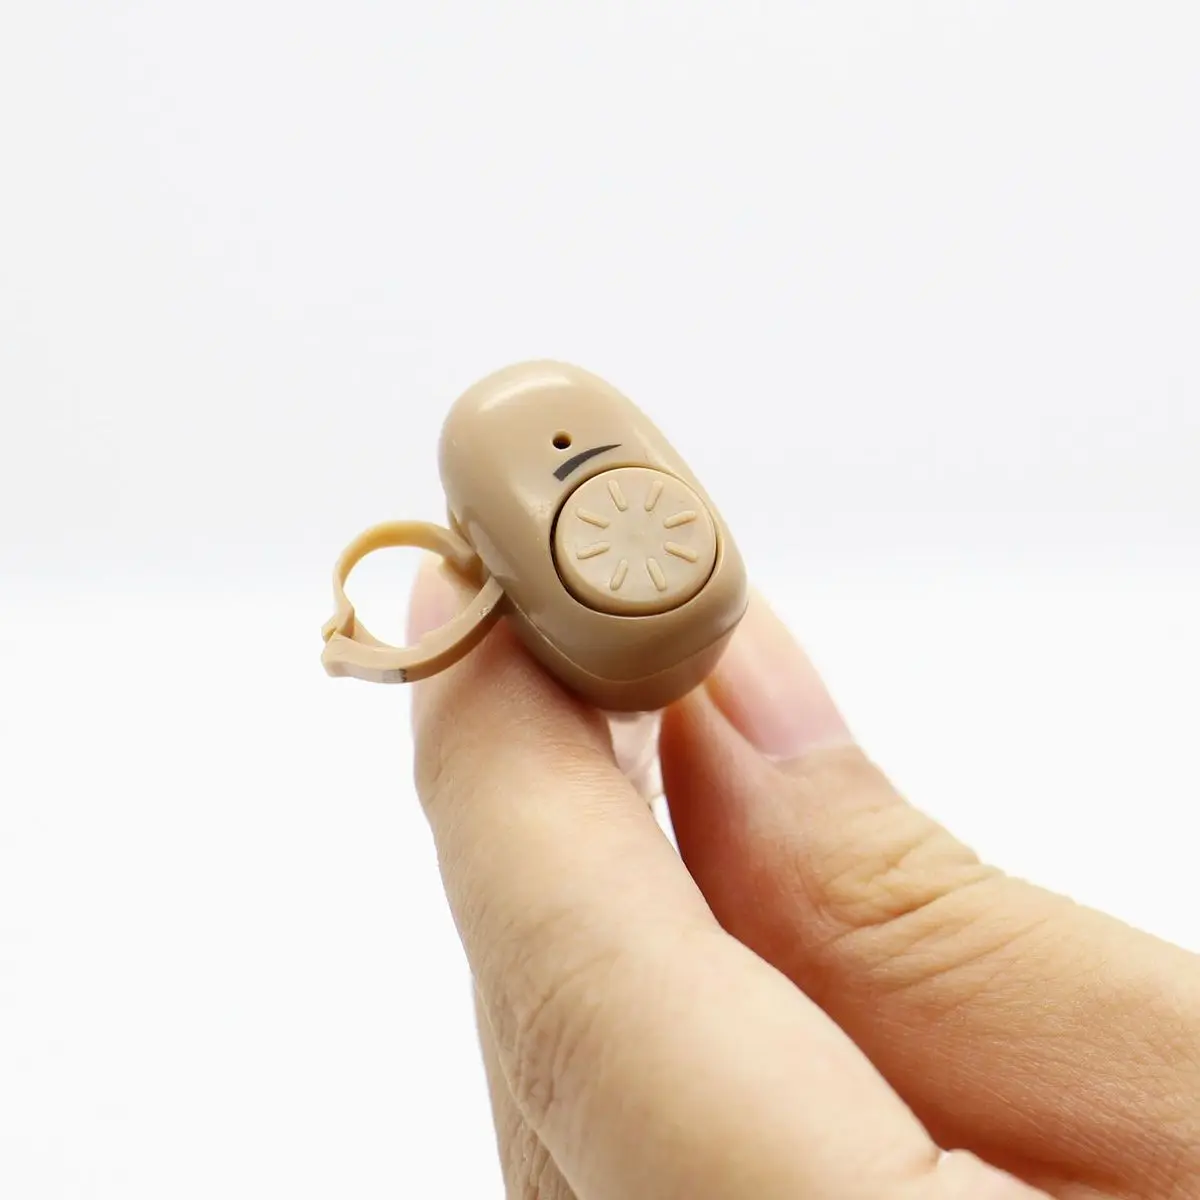 AXON цифровой Невидимый слуховых аппаратов для пожилых людей мини глух слуховой аппарат Беспроводной голос усилитель звука здравоохранения